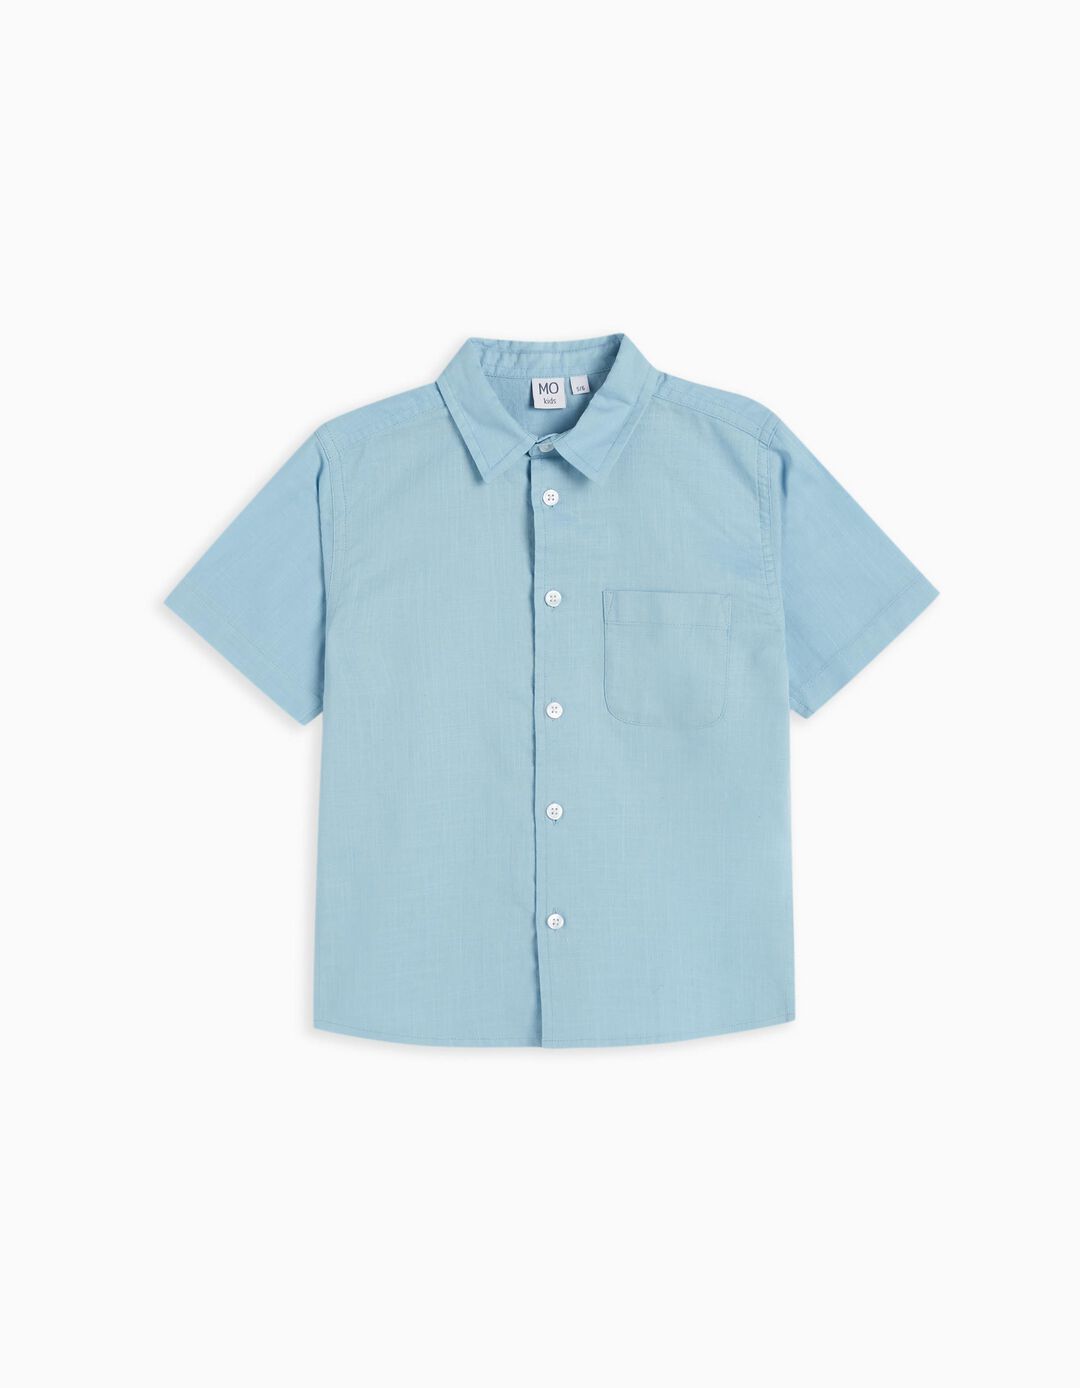 Linen Blend Shirt, Boys, Light Blue